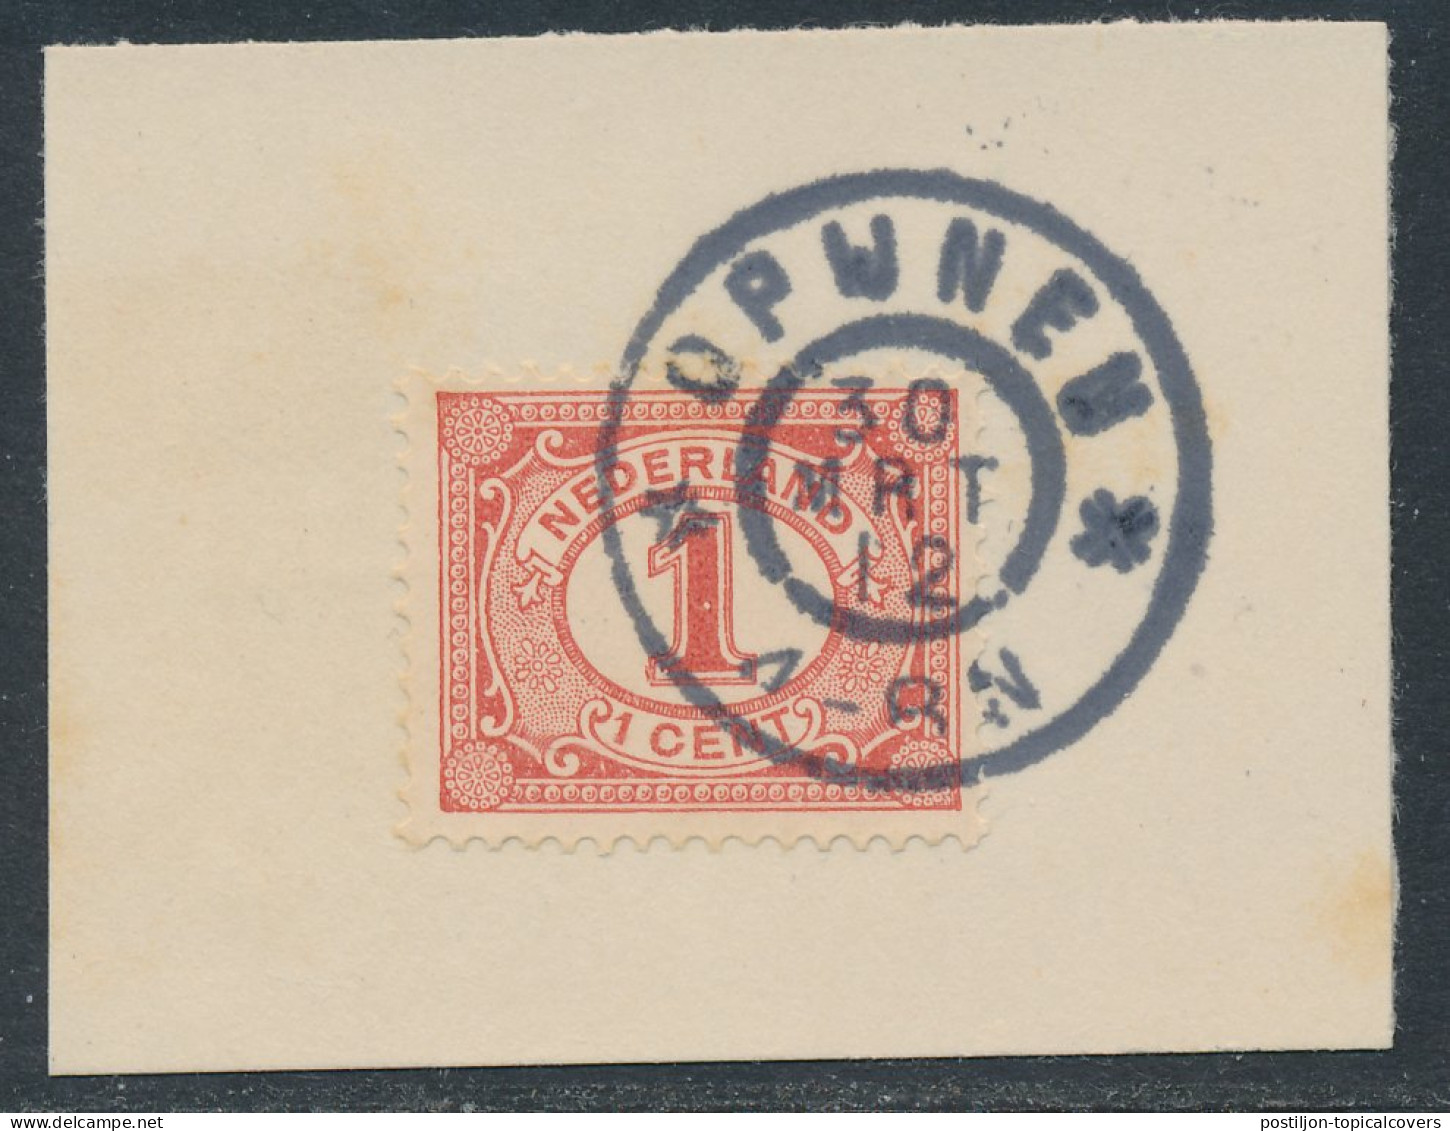 Grootrondstempel Opijnen 1912 - Poststempel